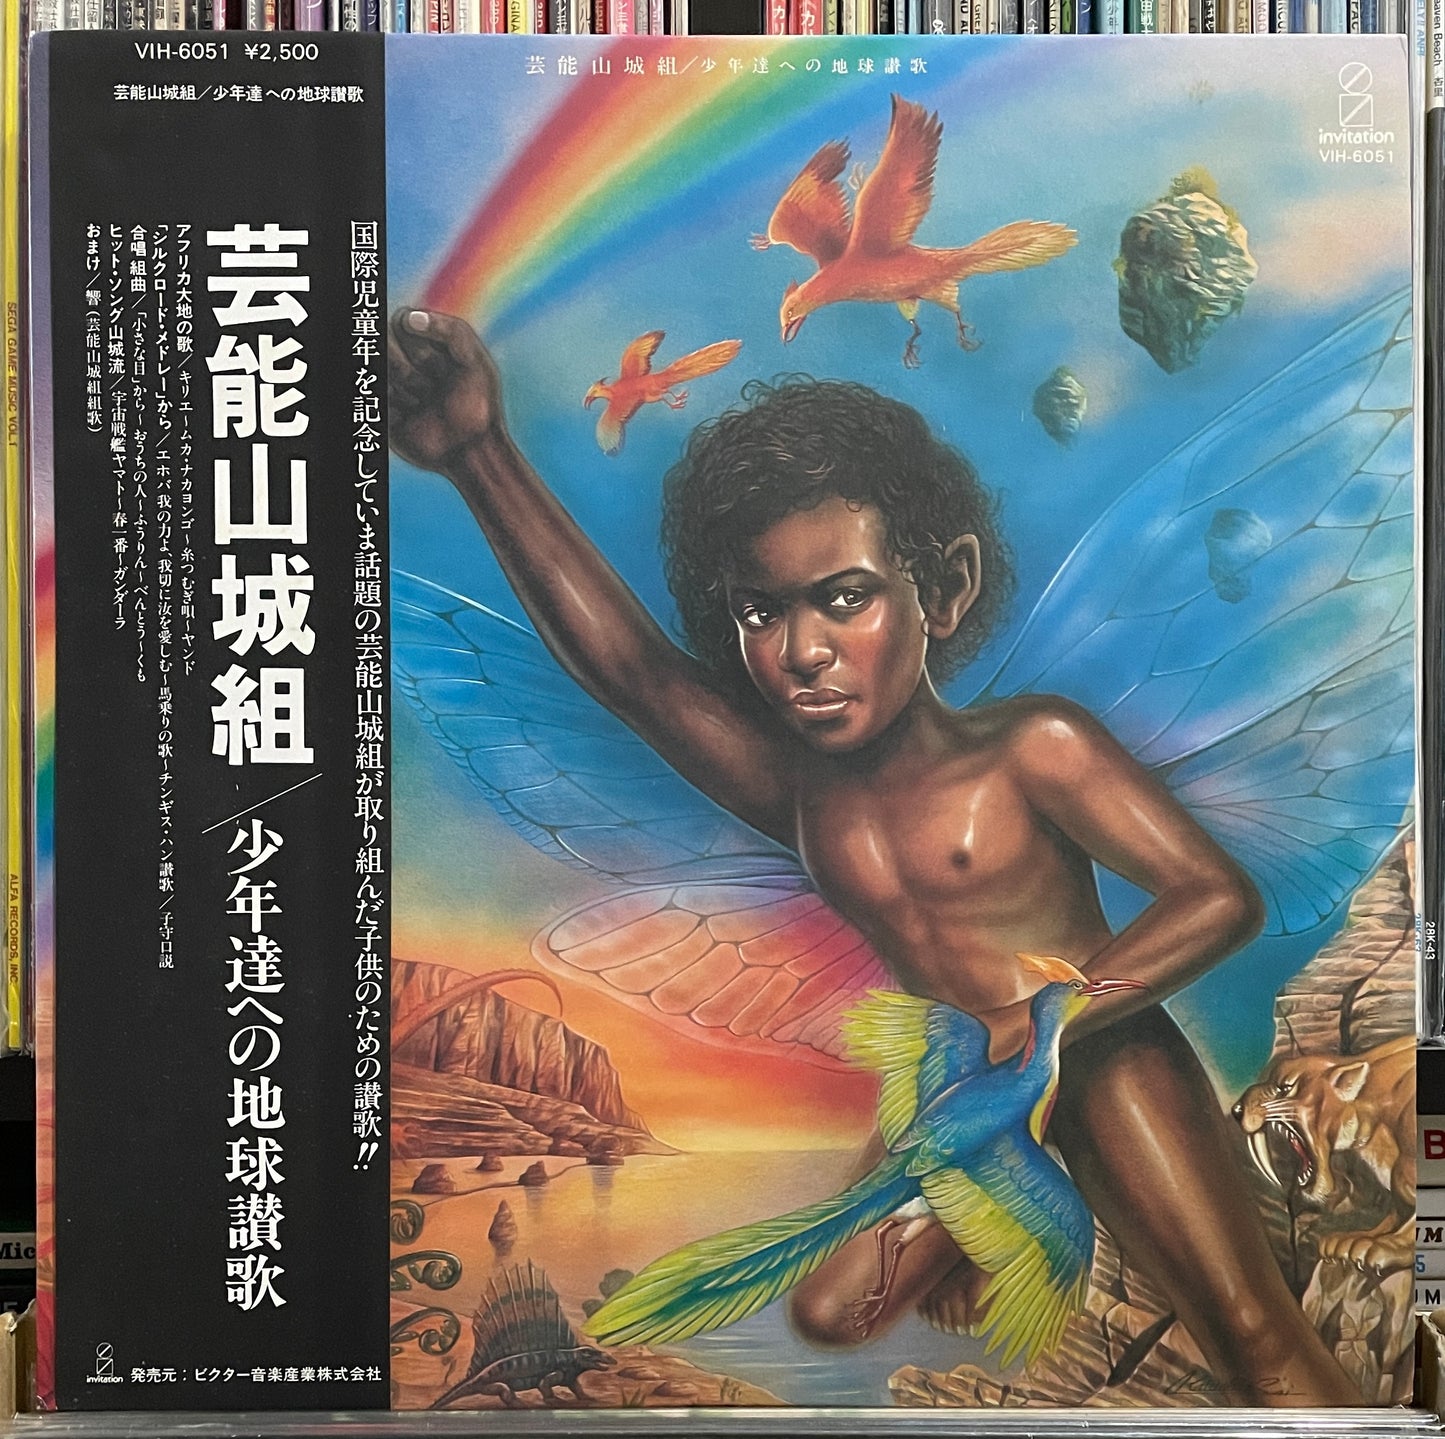 Geinoh Yamashirogumi “少年達への地球讃歌” (1979)